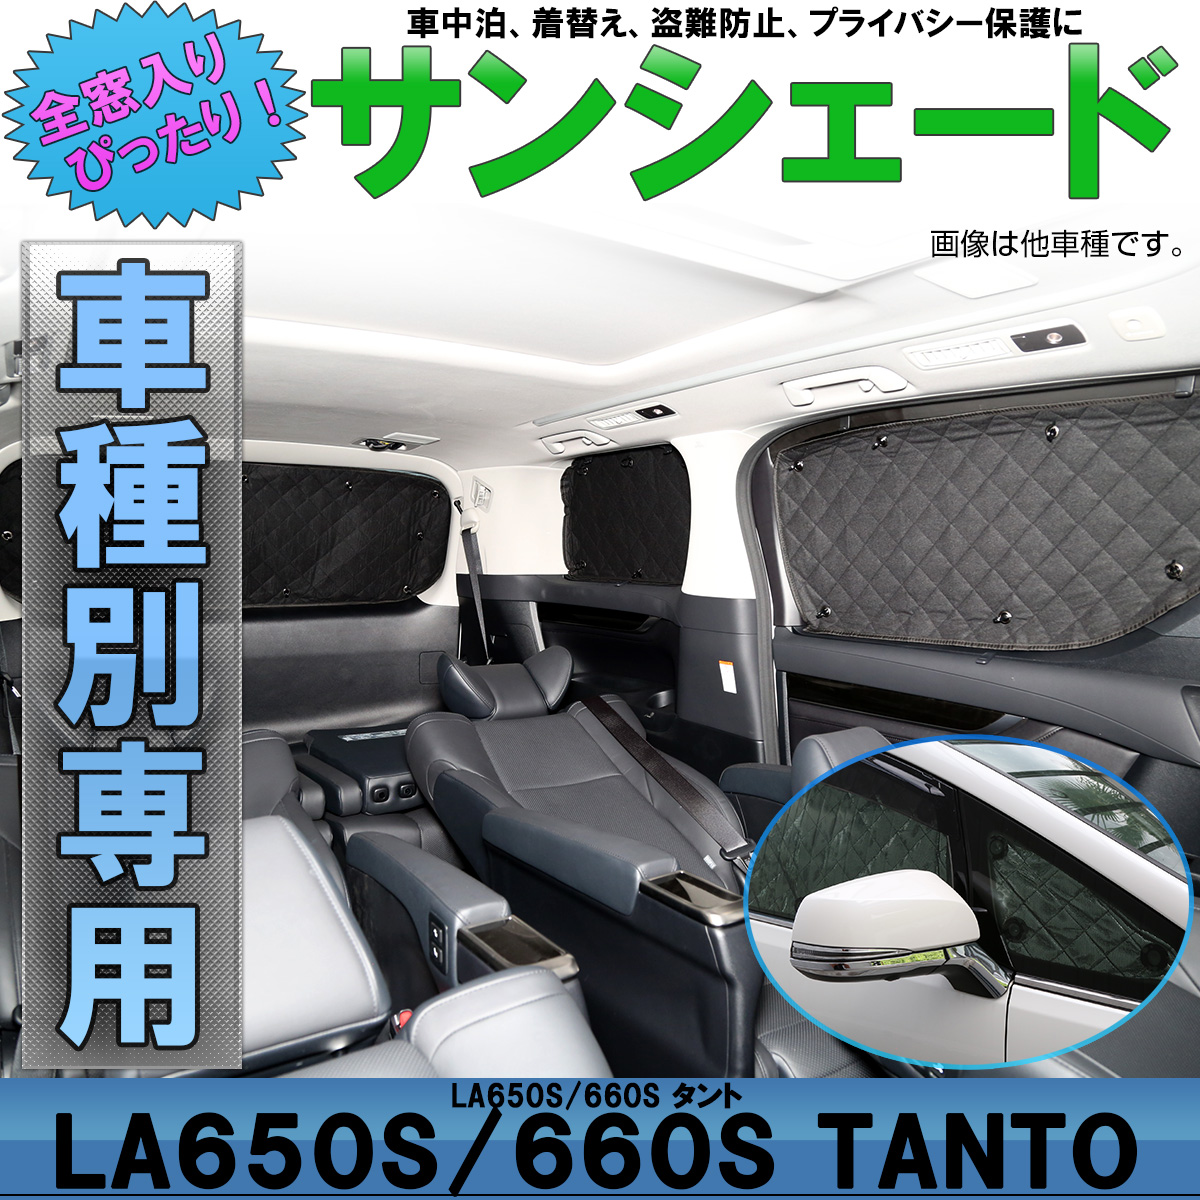 サンシェード La650s La660s タント Tanto タントカスタム 専用設計 全窓用セット 5層構造 ブラックメッシュ 車中泊 プライバシー保護 S 7